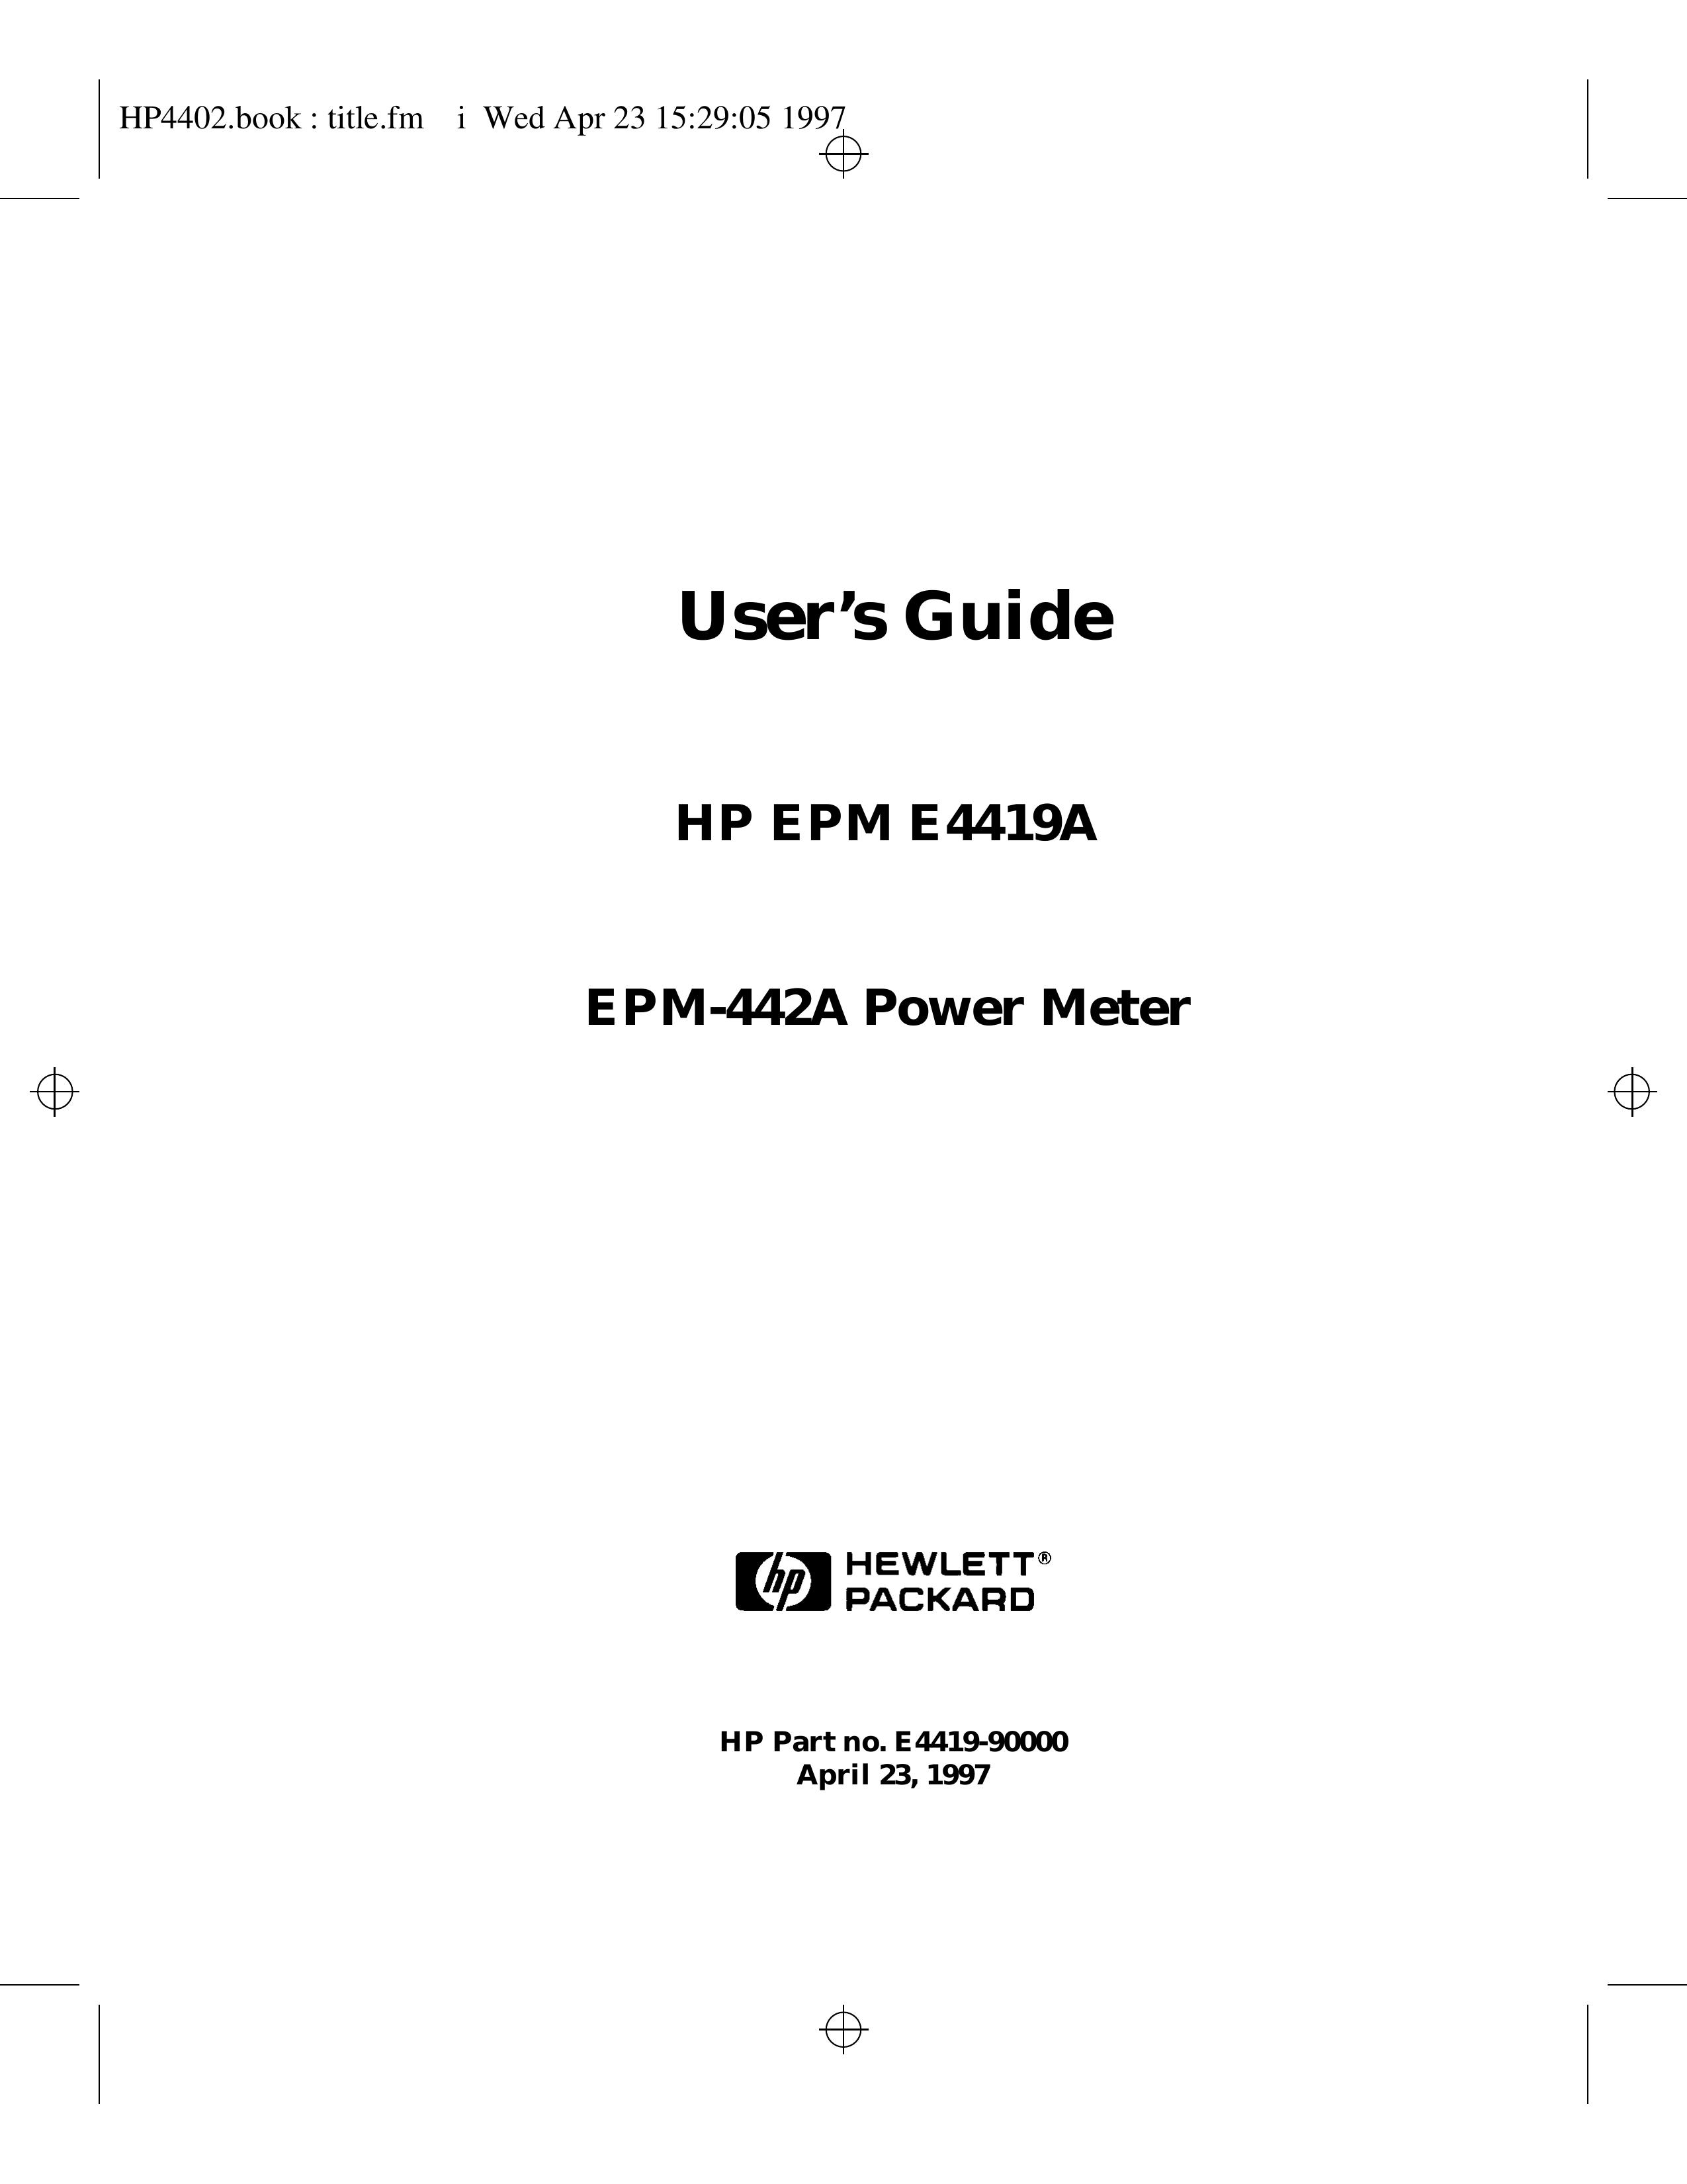 HP (Hewlett-Packard) EPM E4419A Music Mixer User Manual